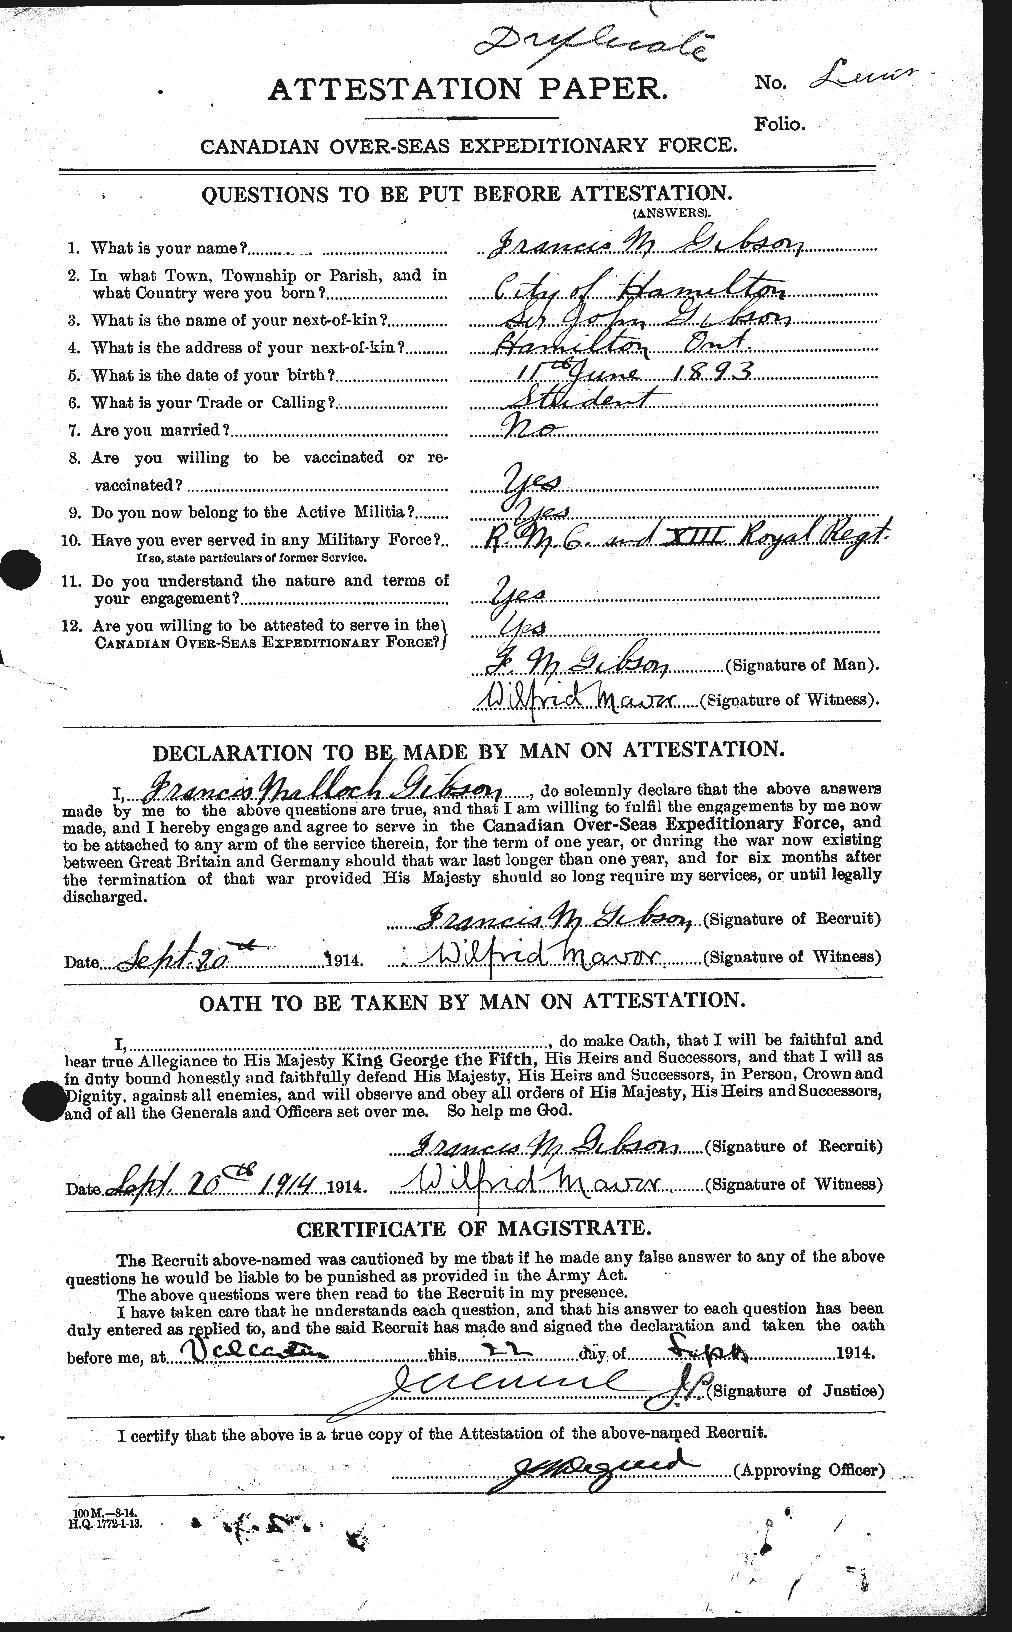 Dossiers du Personnel de la Première Guerre mondiale - CEC 347283a